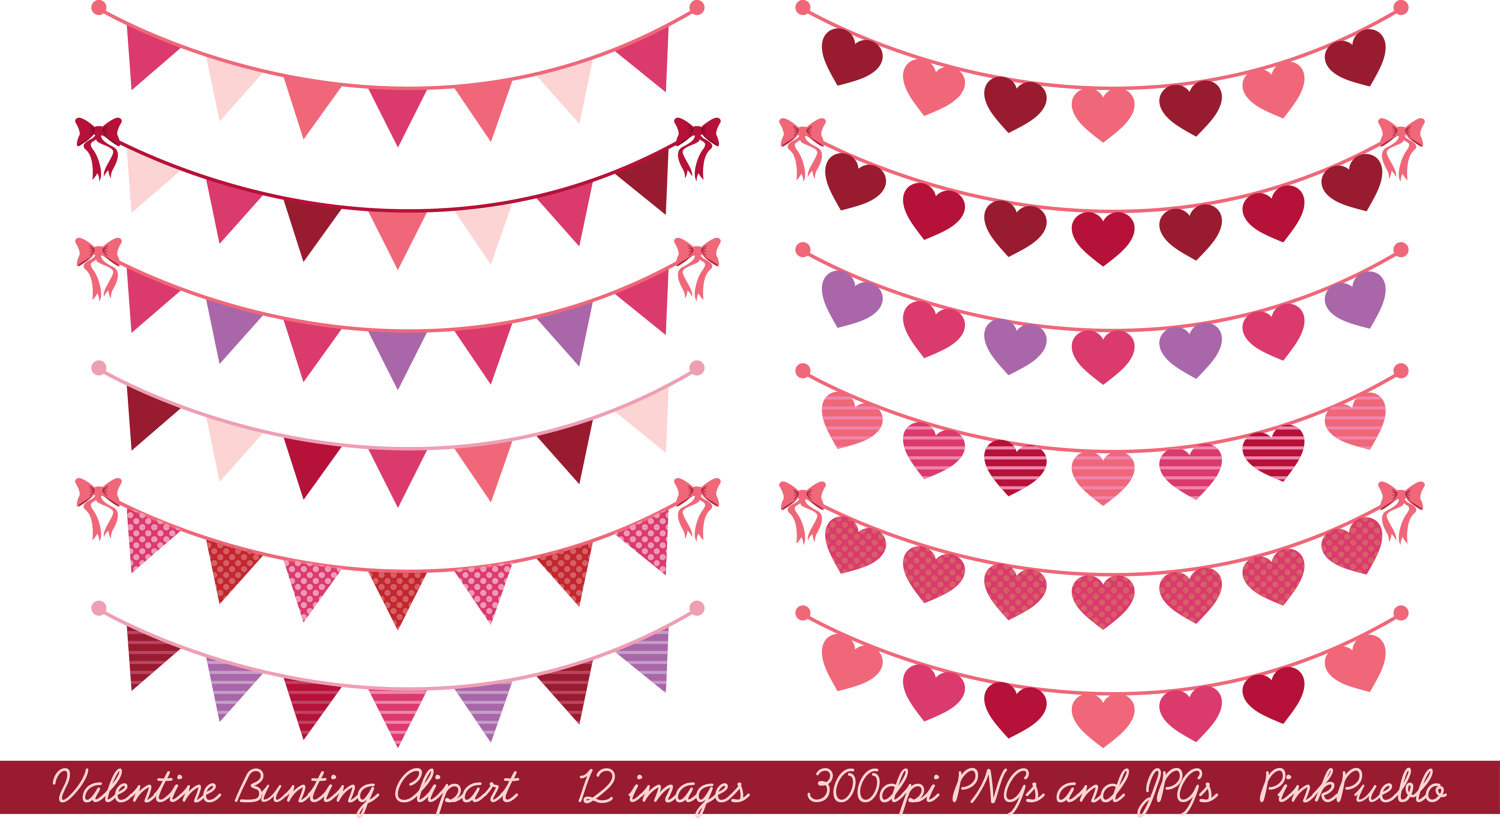 Valentine banner clipart 